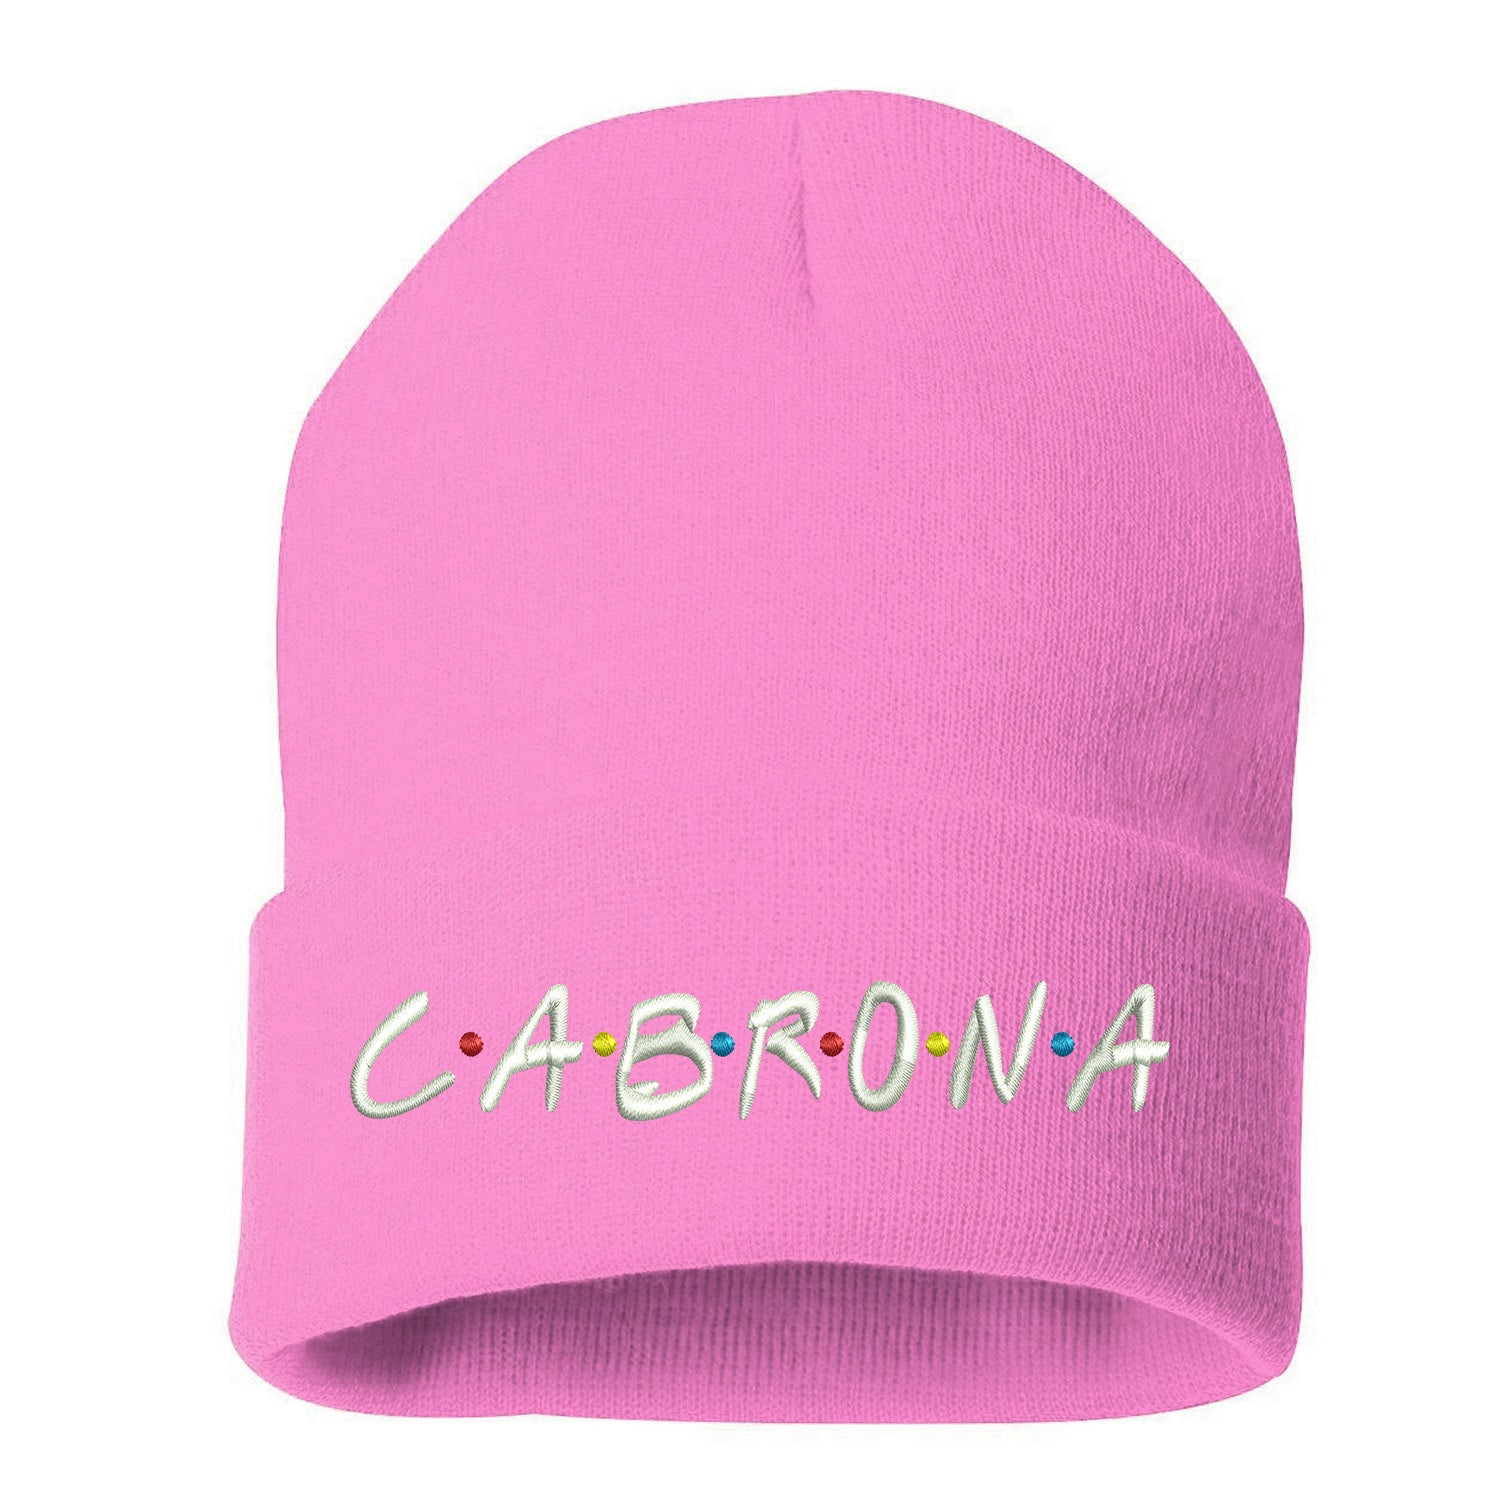 Cabrona Friends Font Cuffed Beanie, Cuffed Beanie Cap, Cabrona Embroidery, Embroidered Beanie Cap, Friends Font, Custom Embroidery, DSY Lifestyle Beanie, Pink Cuffed Beanie, Made in LA